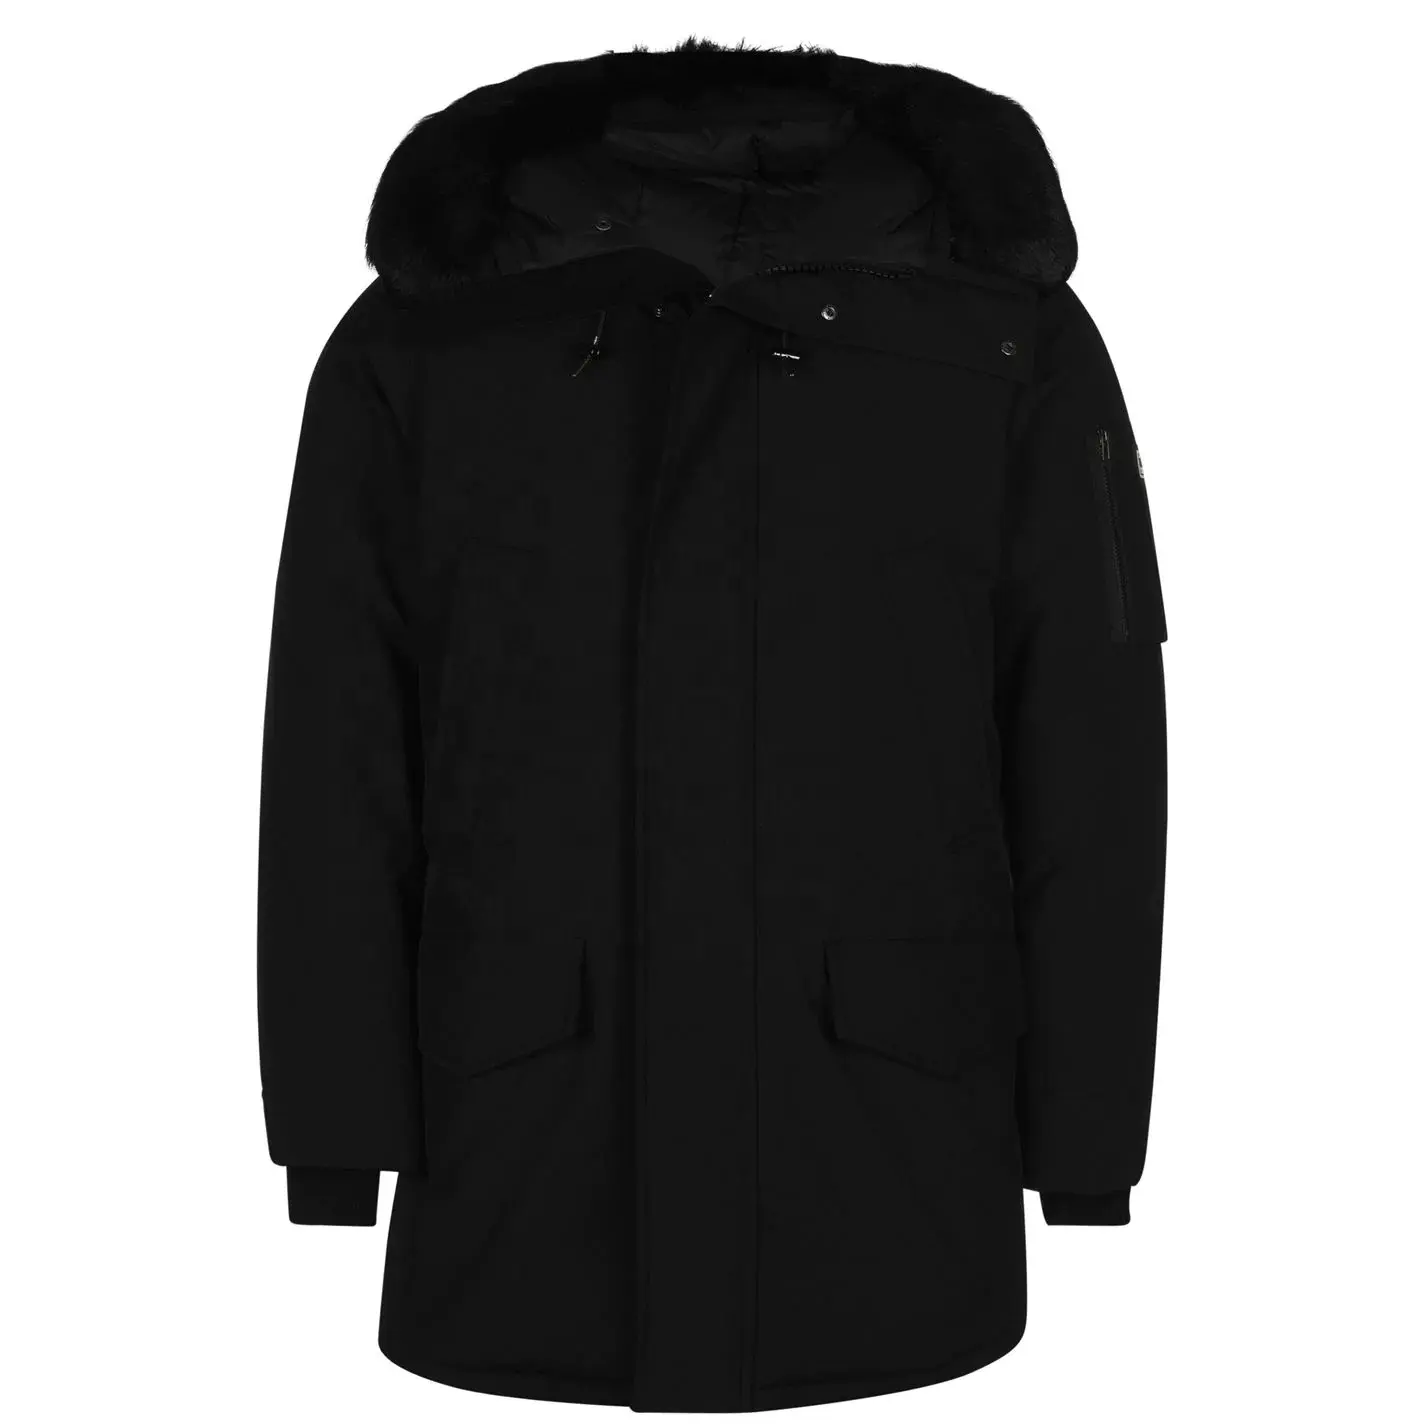 2022 giyim üreticileri kış ceket/erkek Parka ceket ve ceketler bayanlar kışlık ceketler/moda sıcak ceket yastıklı kış